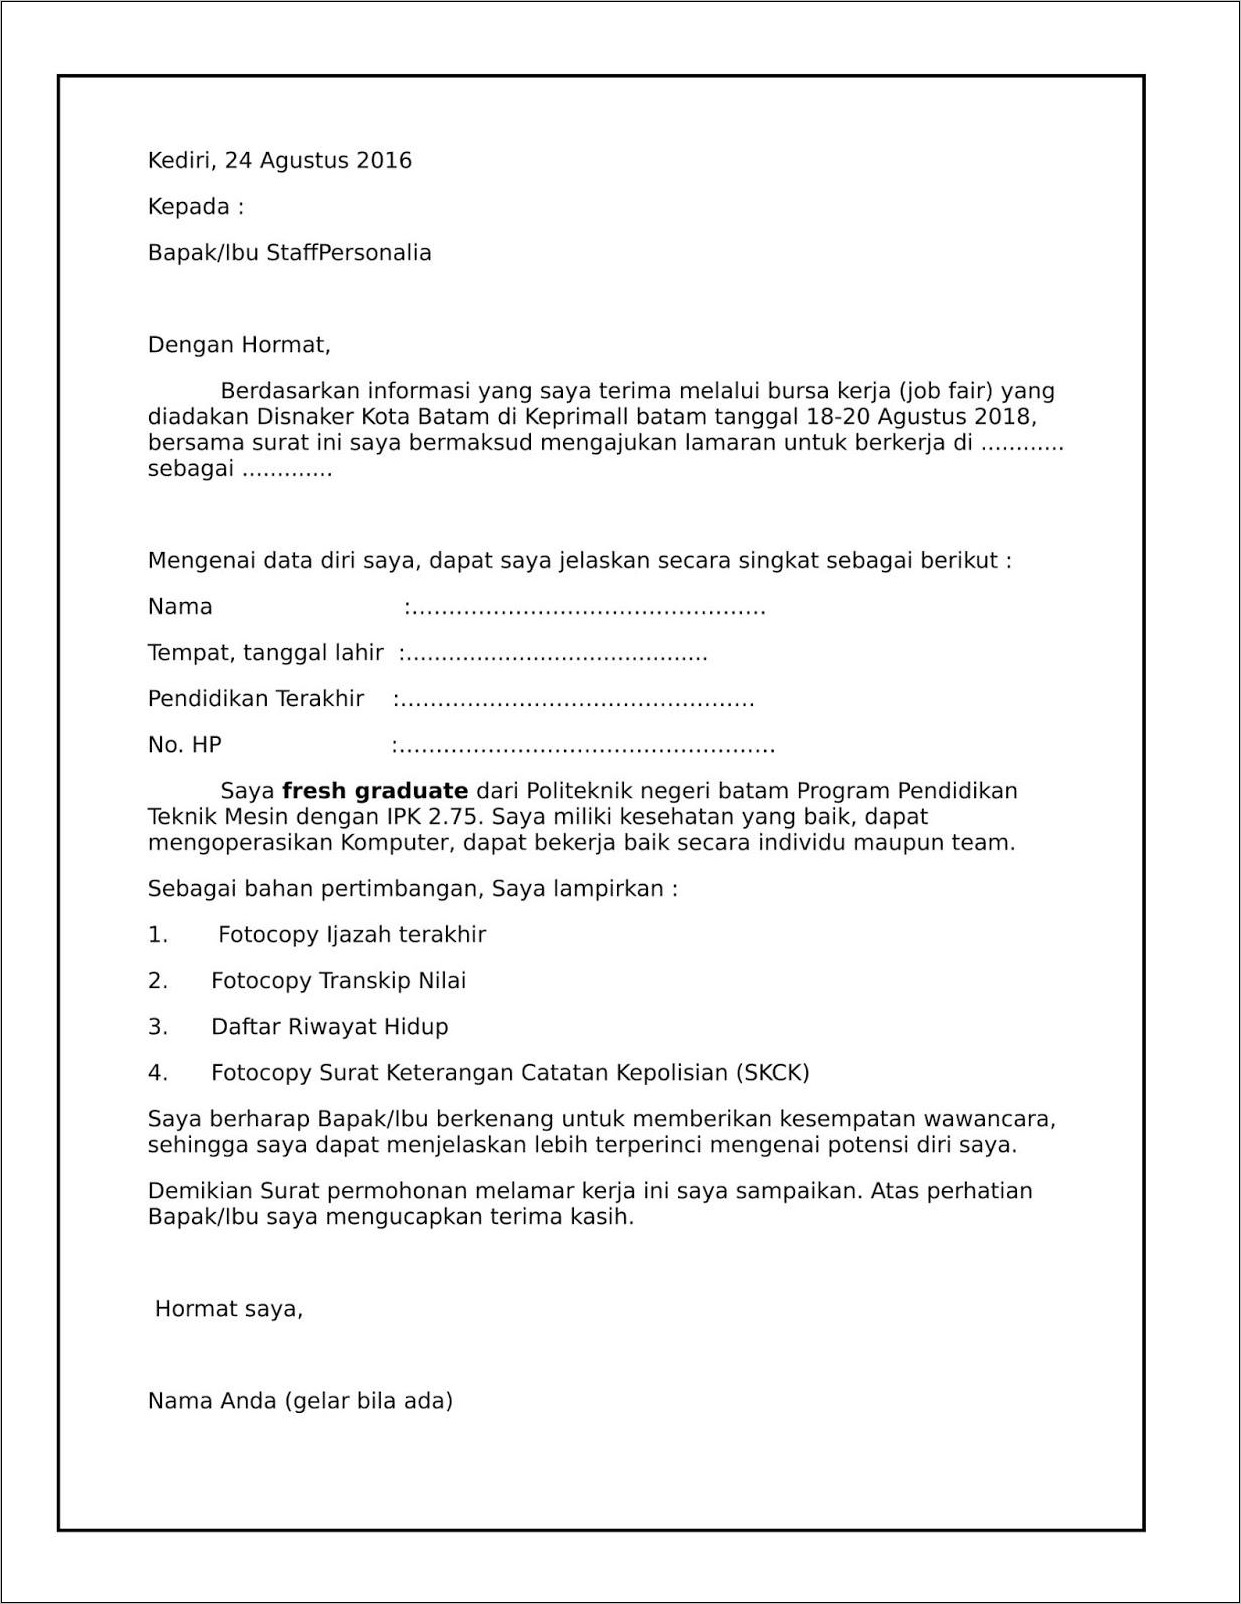 Contoh Surat Lamaran Pekerjaan Untuk Job Fair